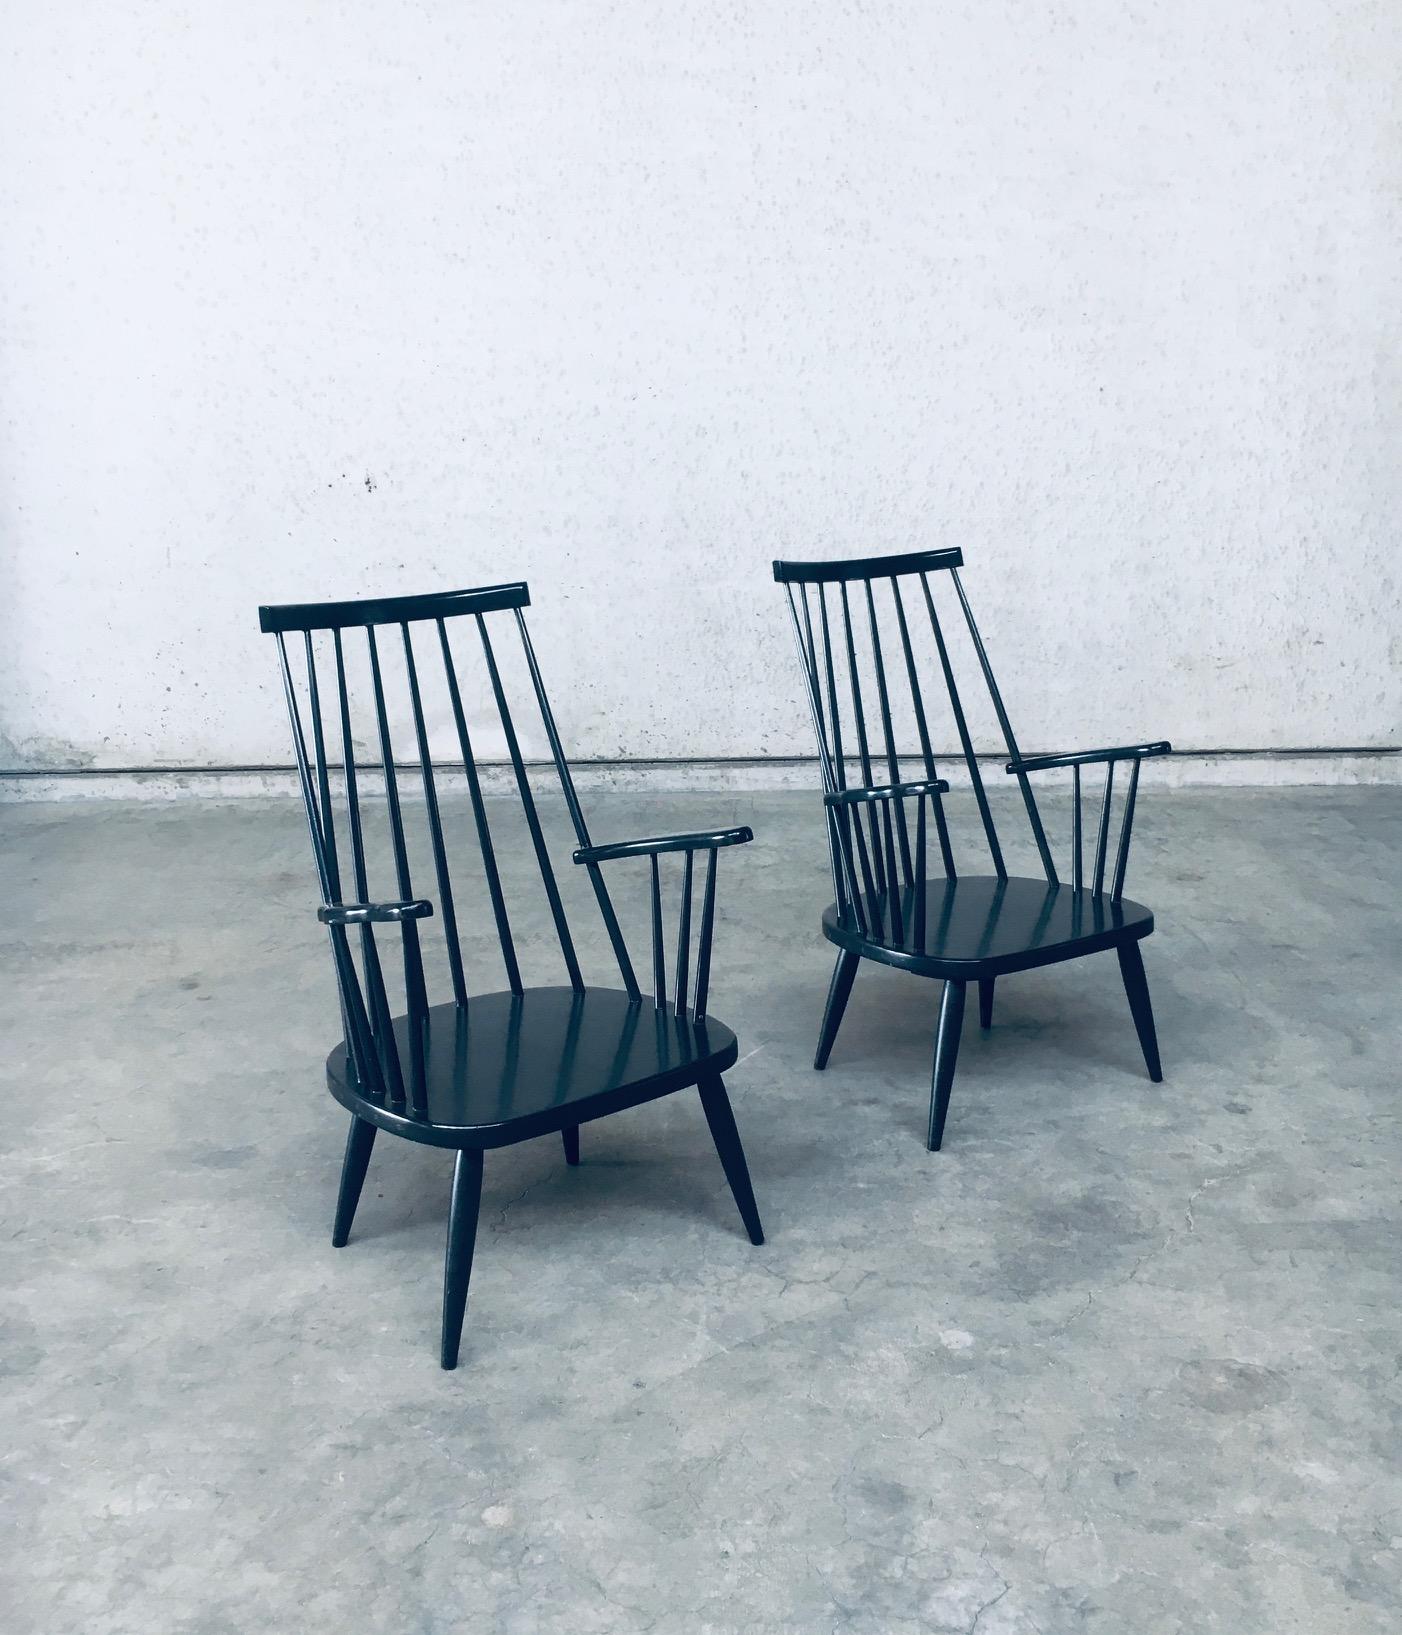 Vintage Midcentury Modern Scandinavian Design Spindle Back Lounge Chair Set. Hergestellt in Dänemark, 1960er Jahre. Keine Herstellerkennzeichen. Schwarz lackierte, niedrige Sessel aus Buchenholz. Diese sind in einem sehr guten, originalen Zustand.